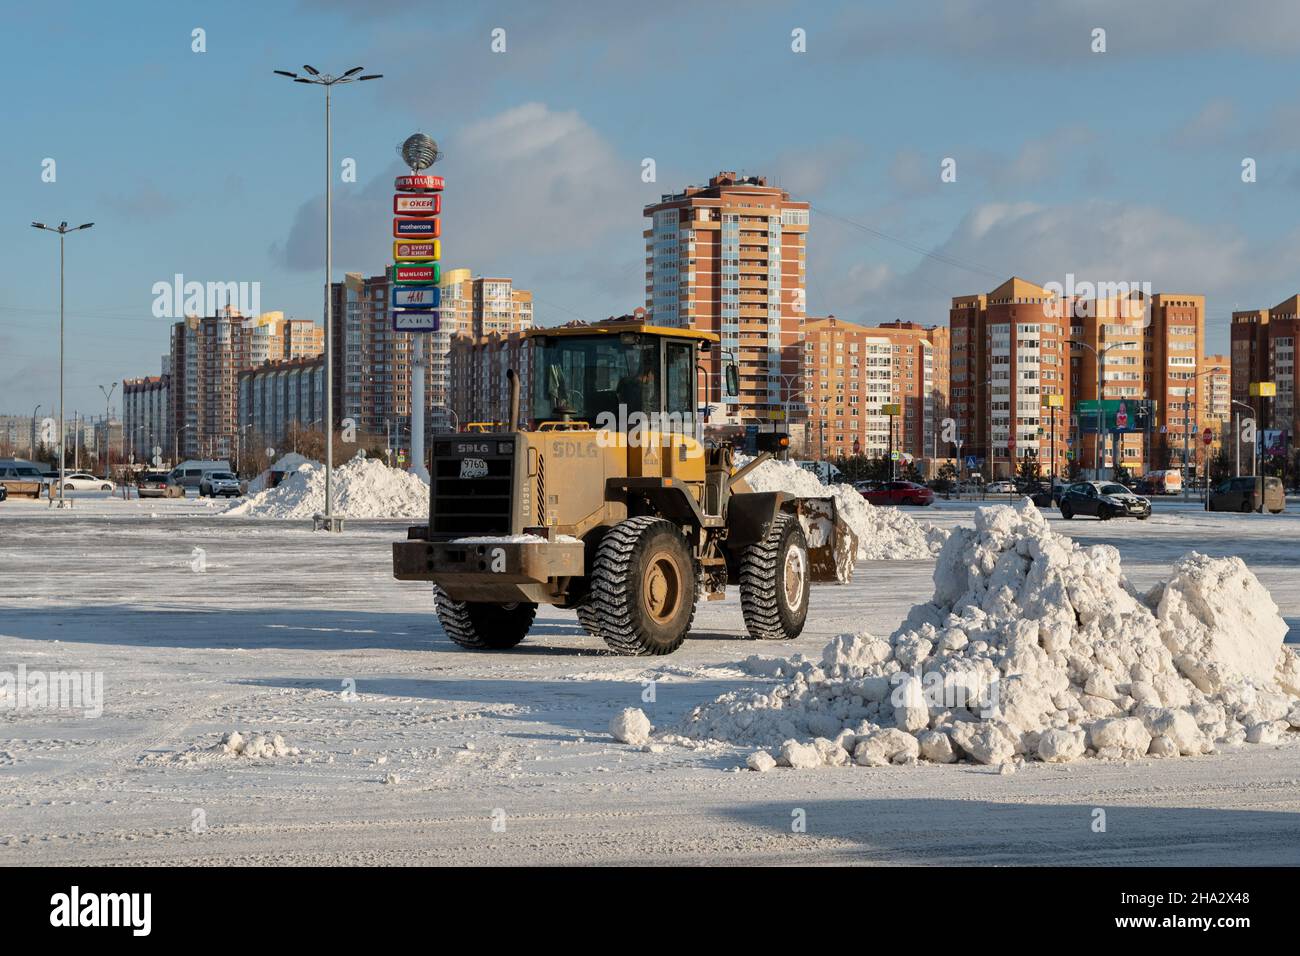 Kleines schneeräumfahrzeug, das schnee auf dem stadtplatz entfernt